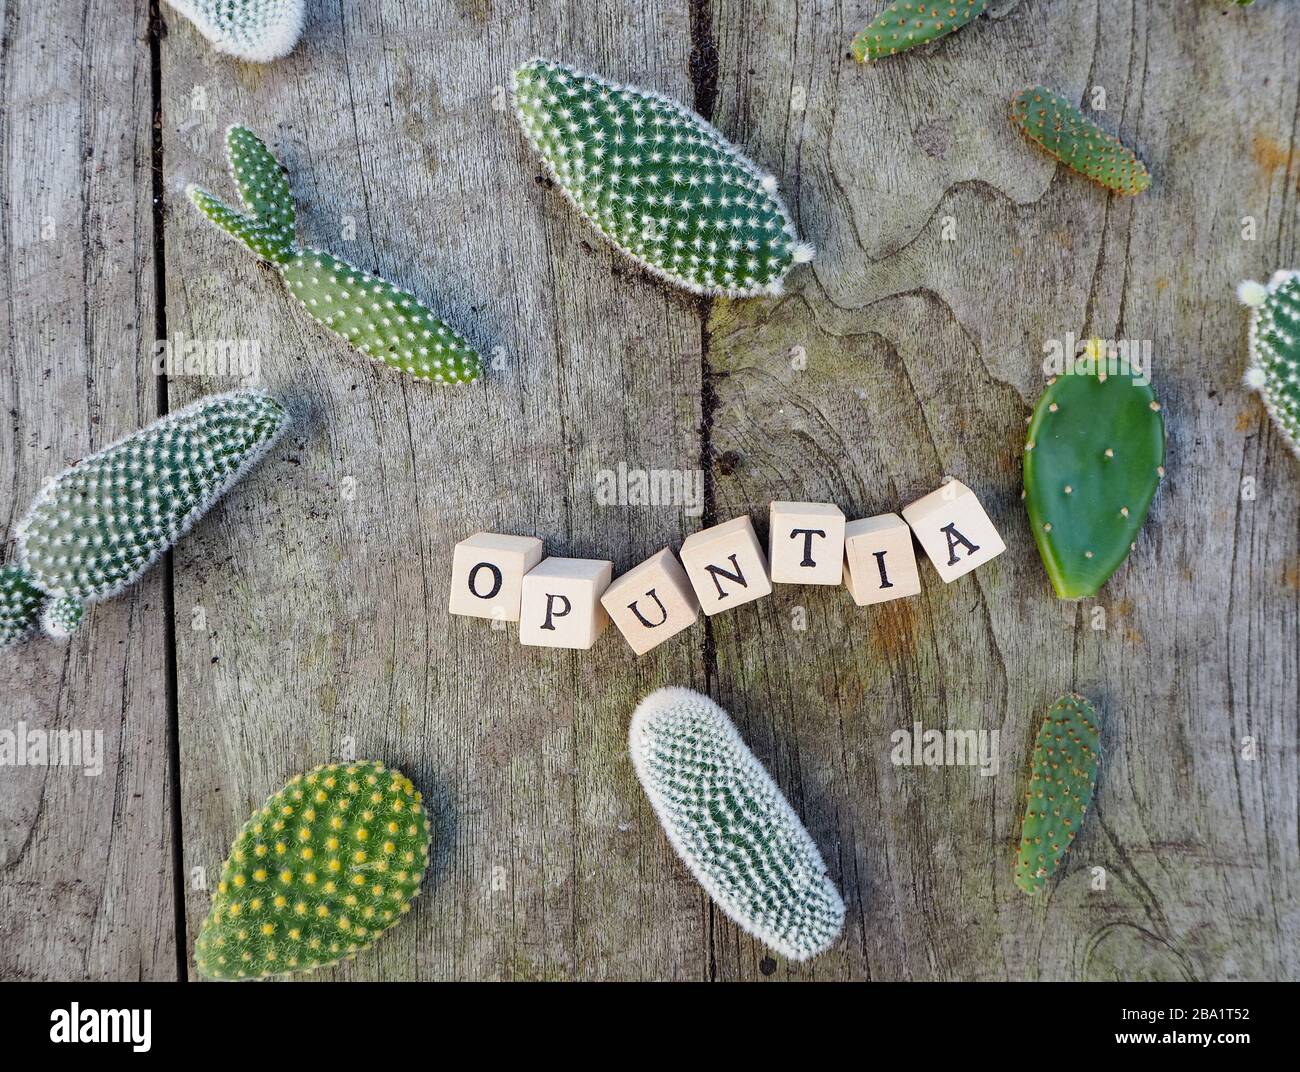 Tavolette del cactus opuntia microdasys, comunemente noto come bunny ears cactus, su un tavolo di legno con il suo nome in lettere Foto Stock